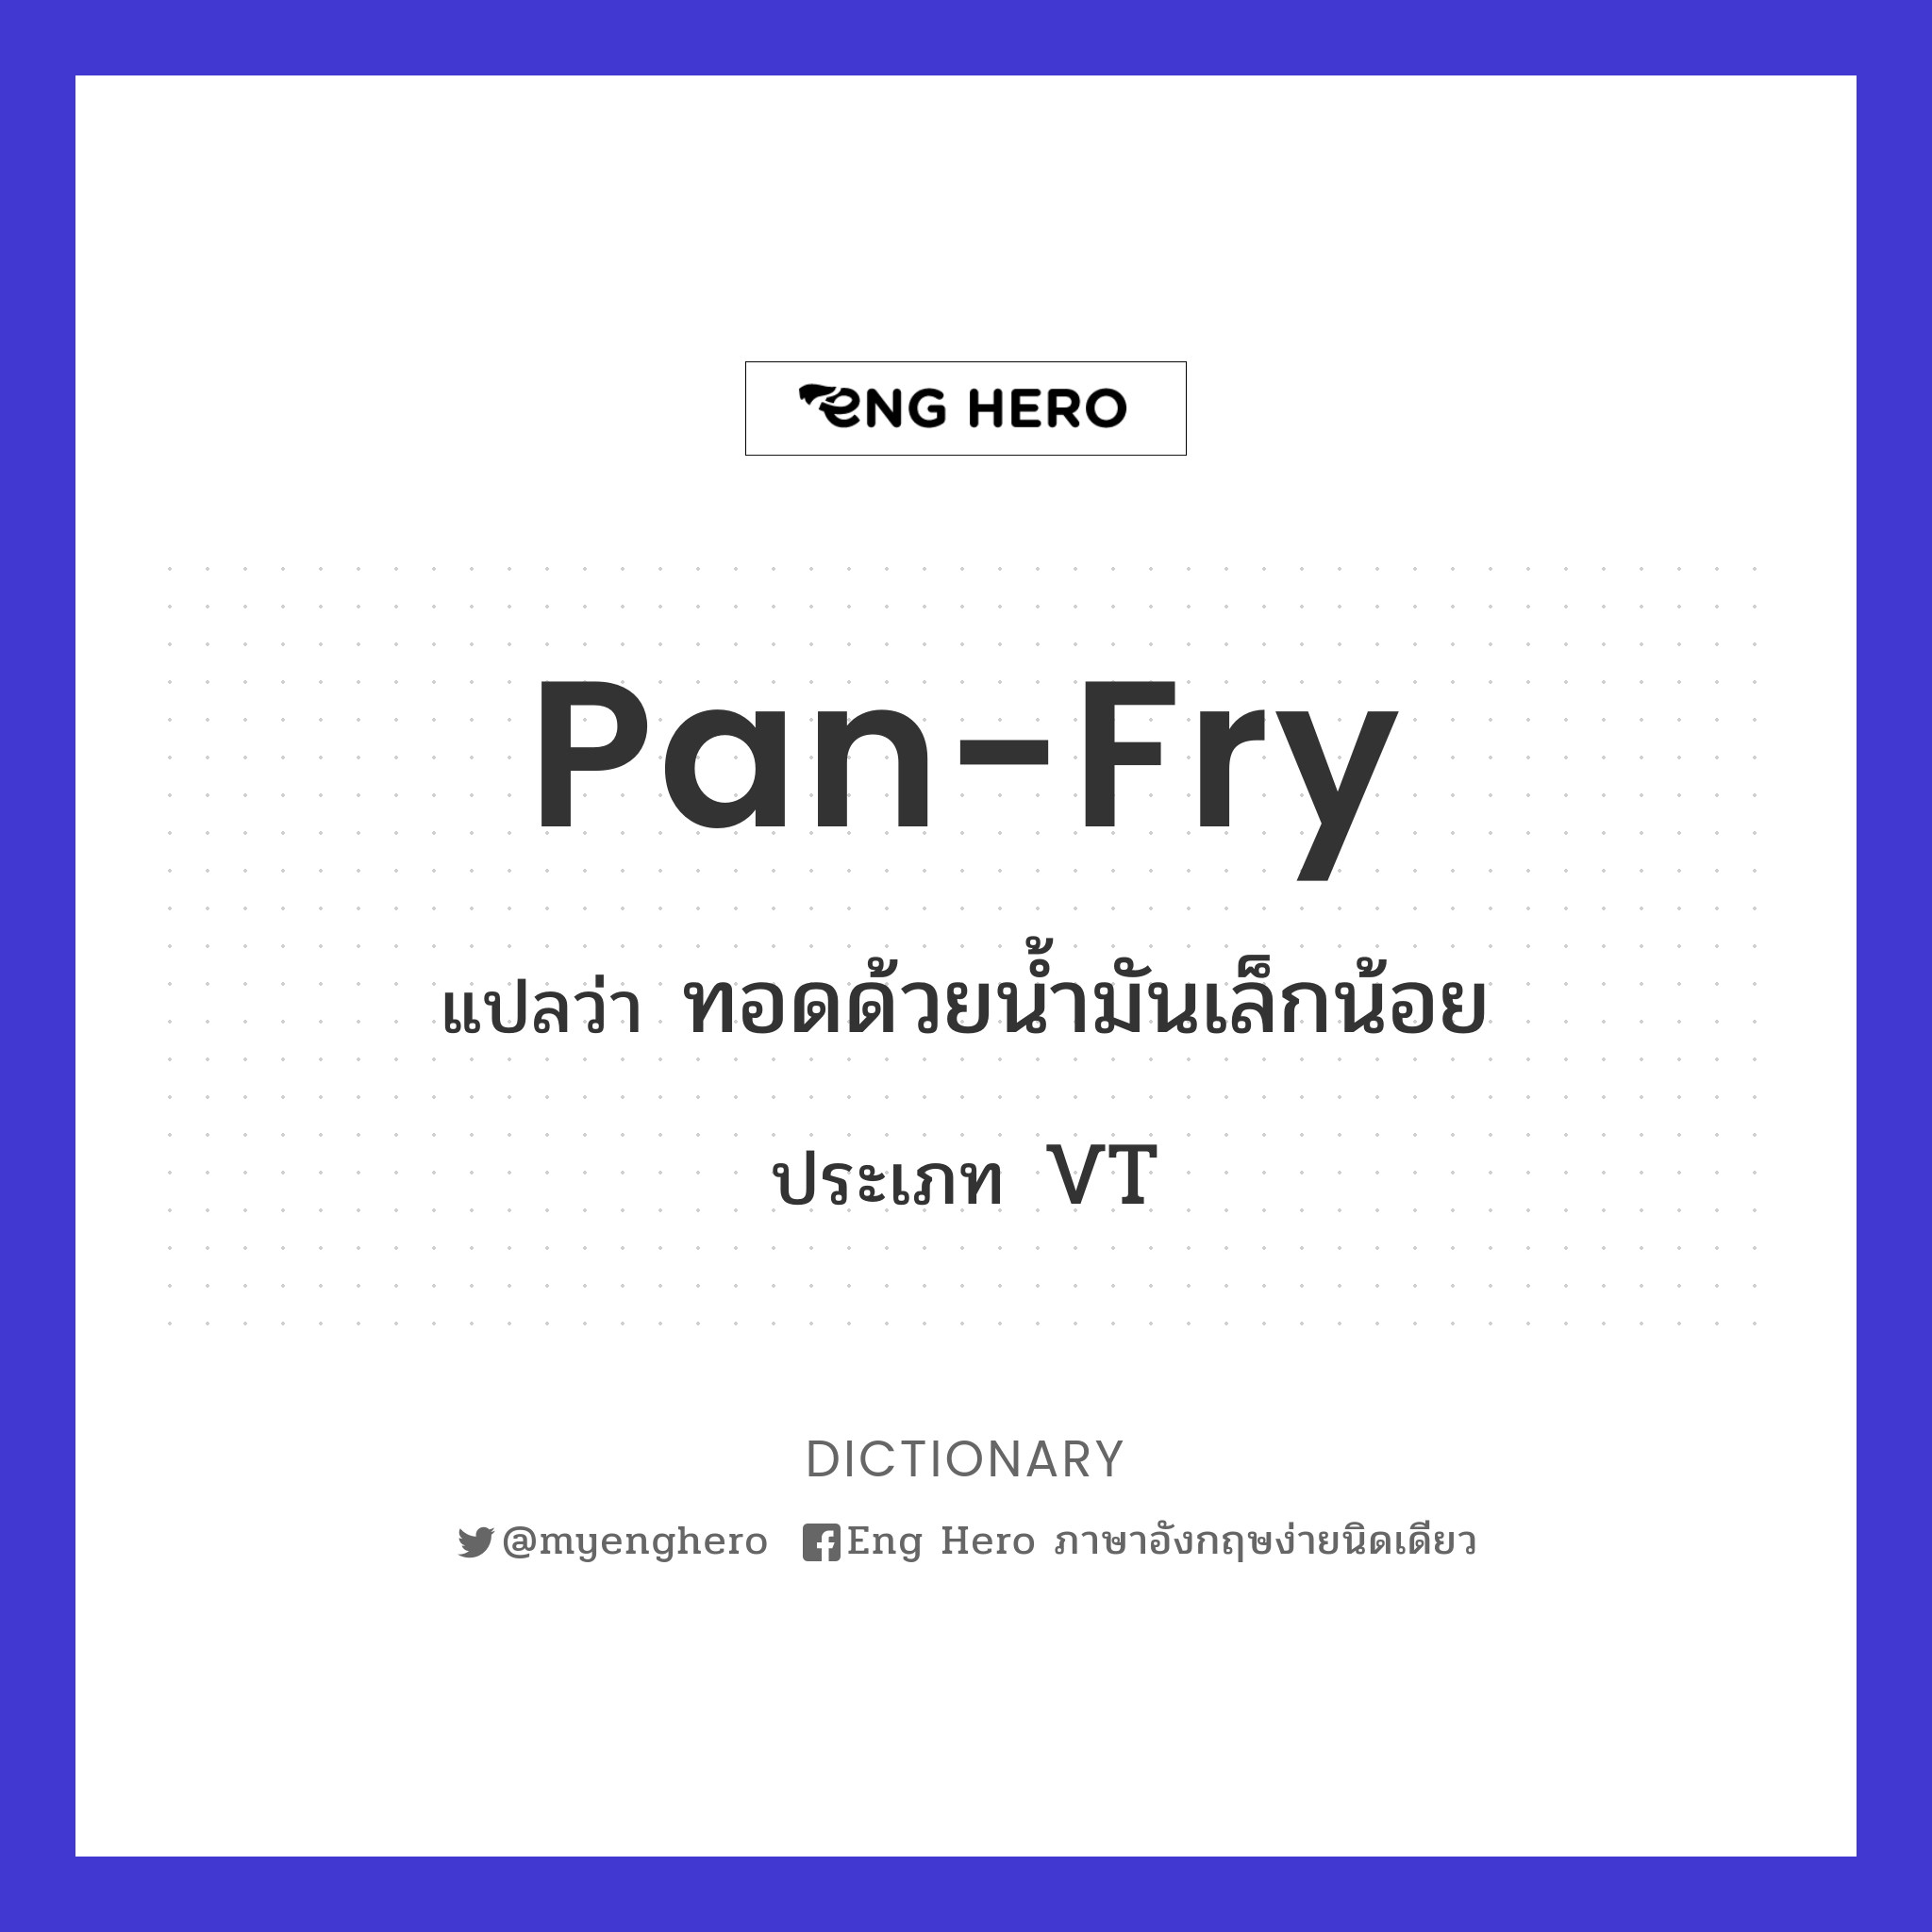 pan-fry